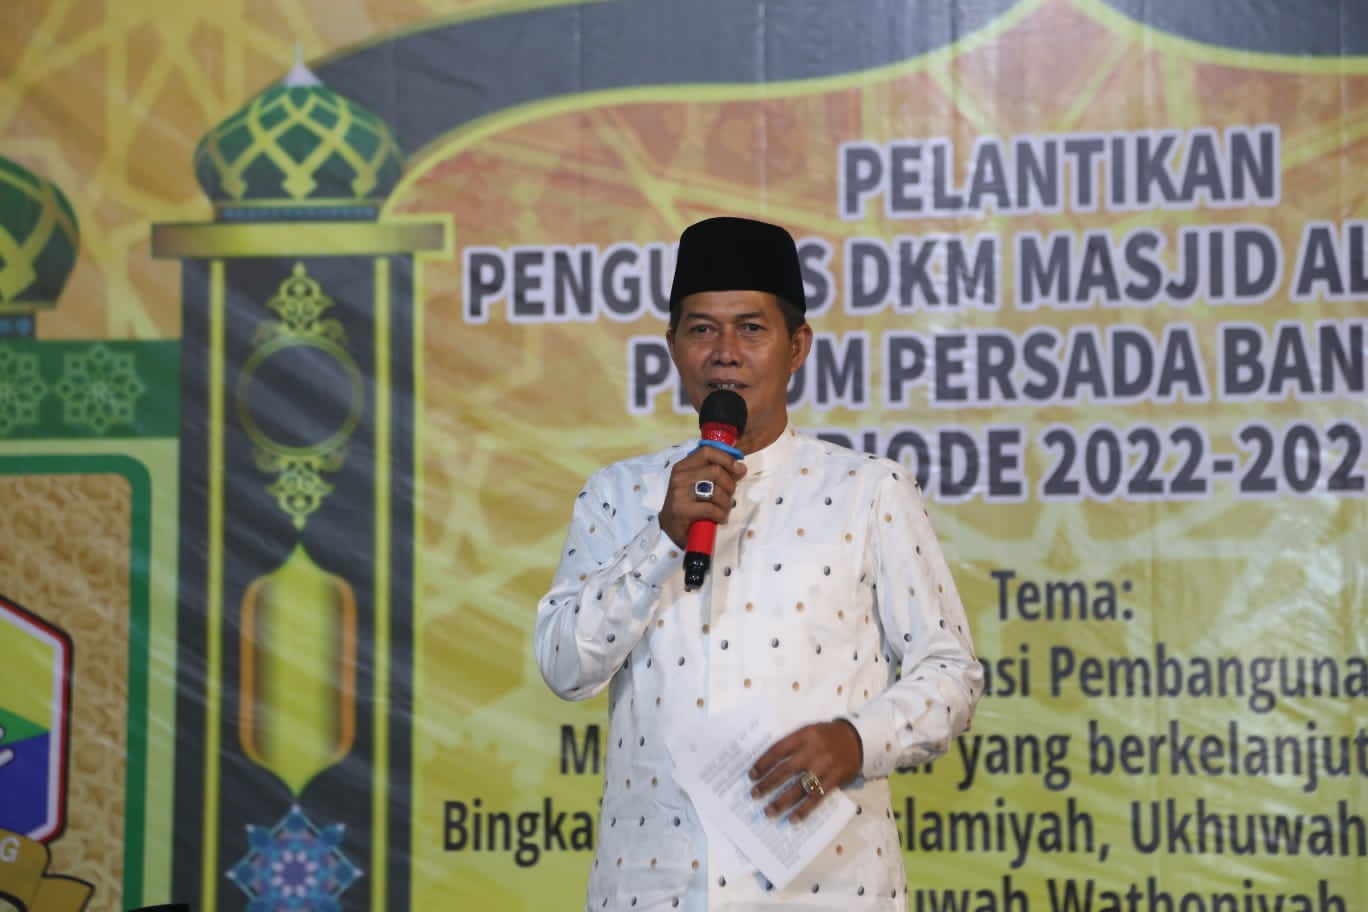 Walikota Serang Menghadiri Kegiatan Pelantikan Pengurus DKM Masjid Al-Jabbar Periode 2022-2025